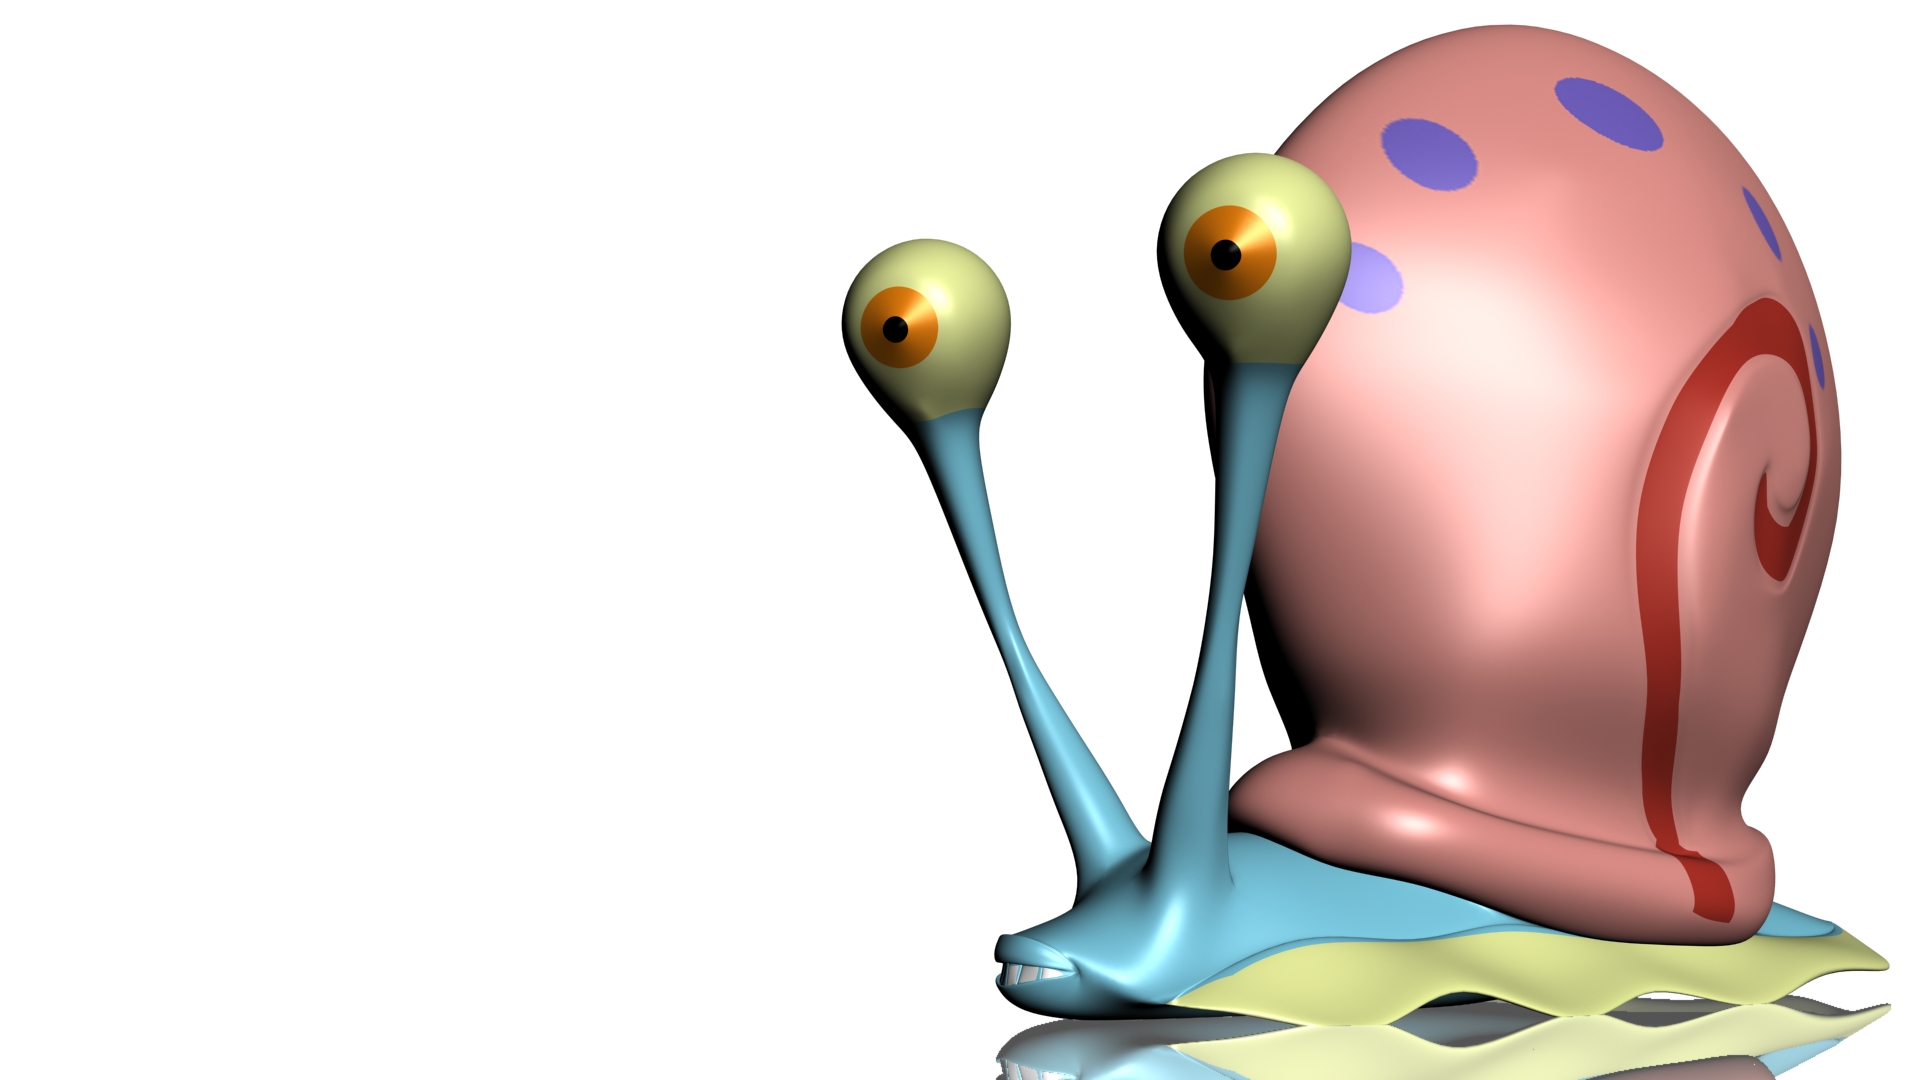 cartoon, 3d, spongebob squarepants, tv show, mollusc, snail